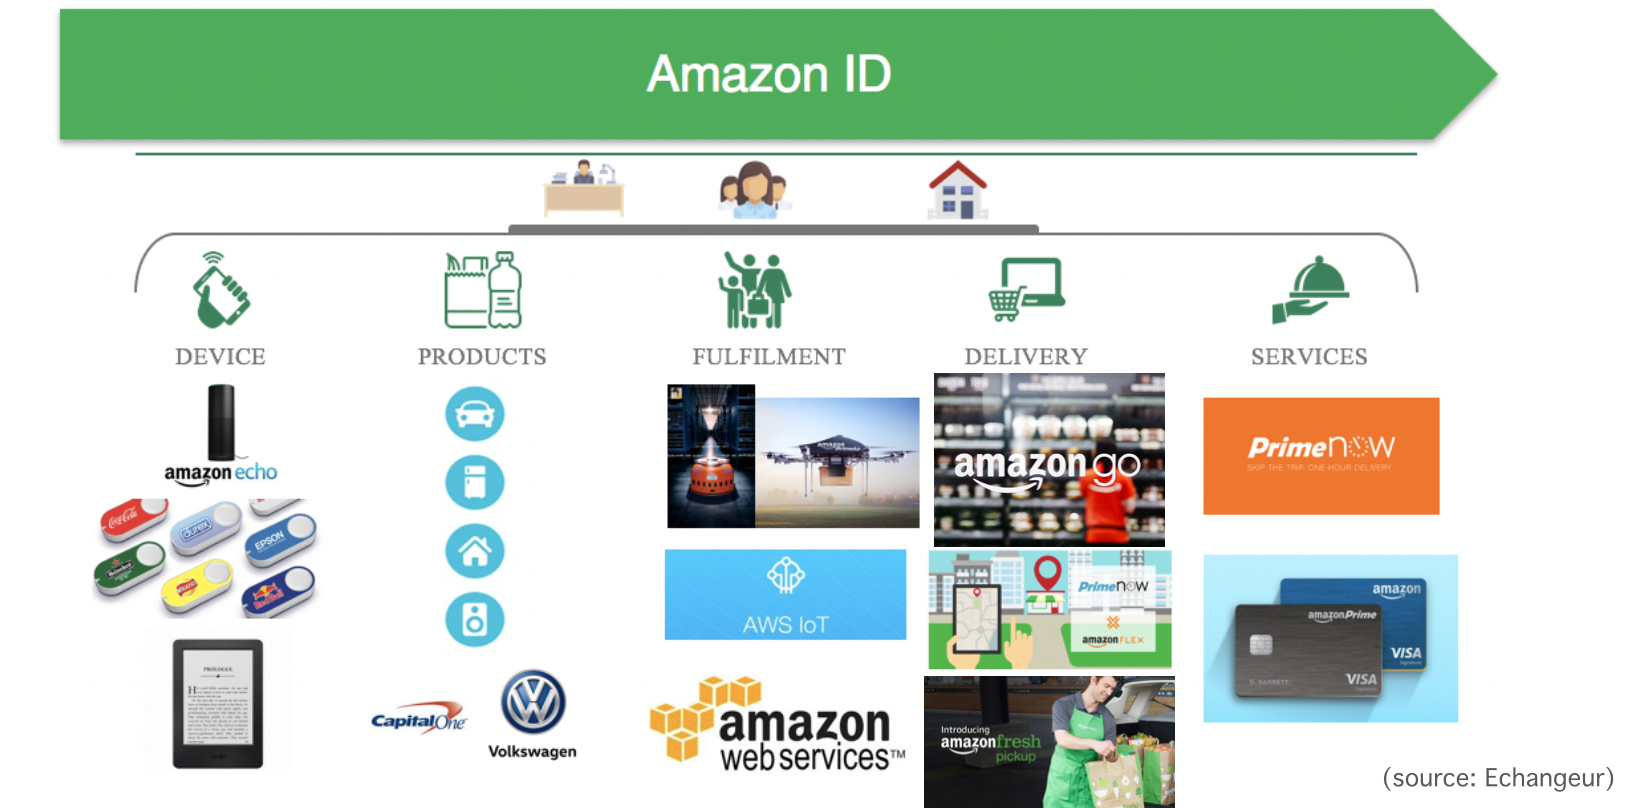 Amazon ID